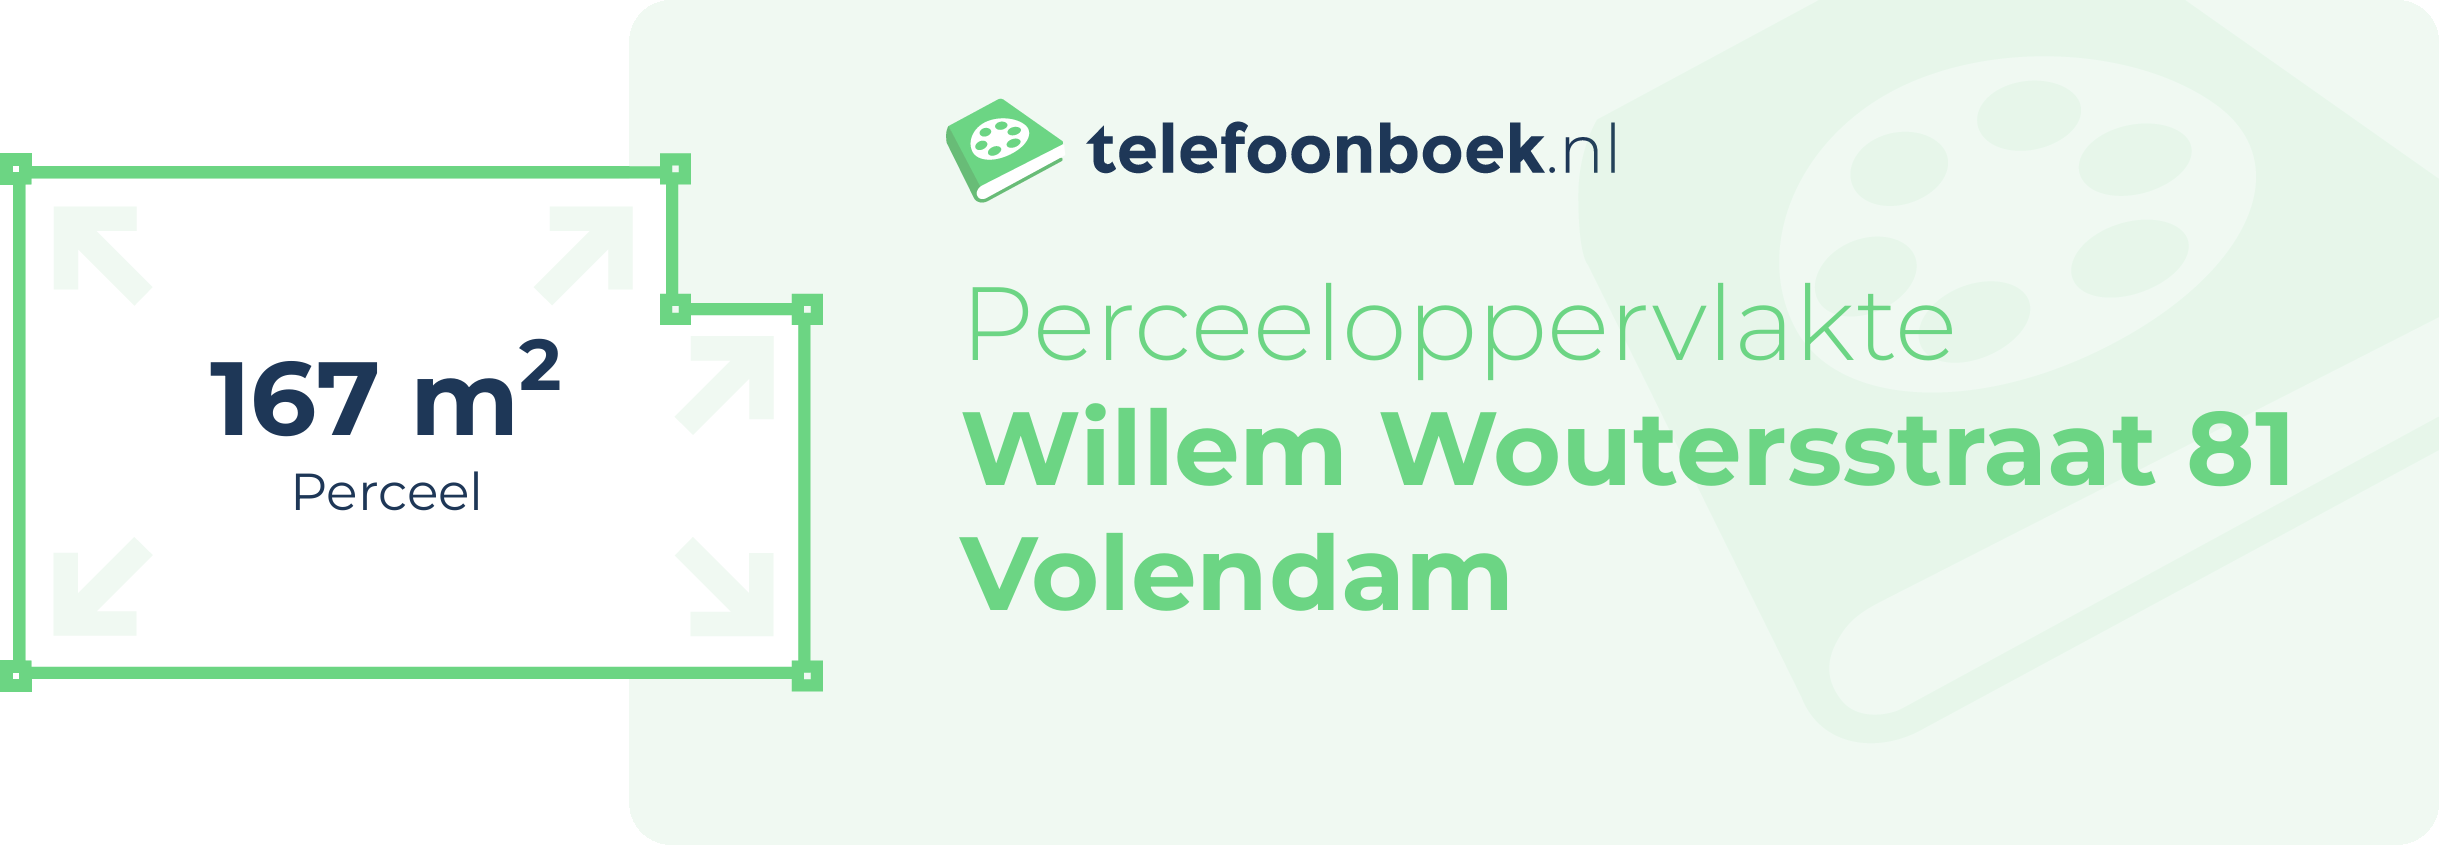 Perceeloppervlakte Willem Woutersstraat 81 Volendam